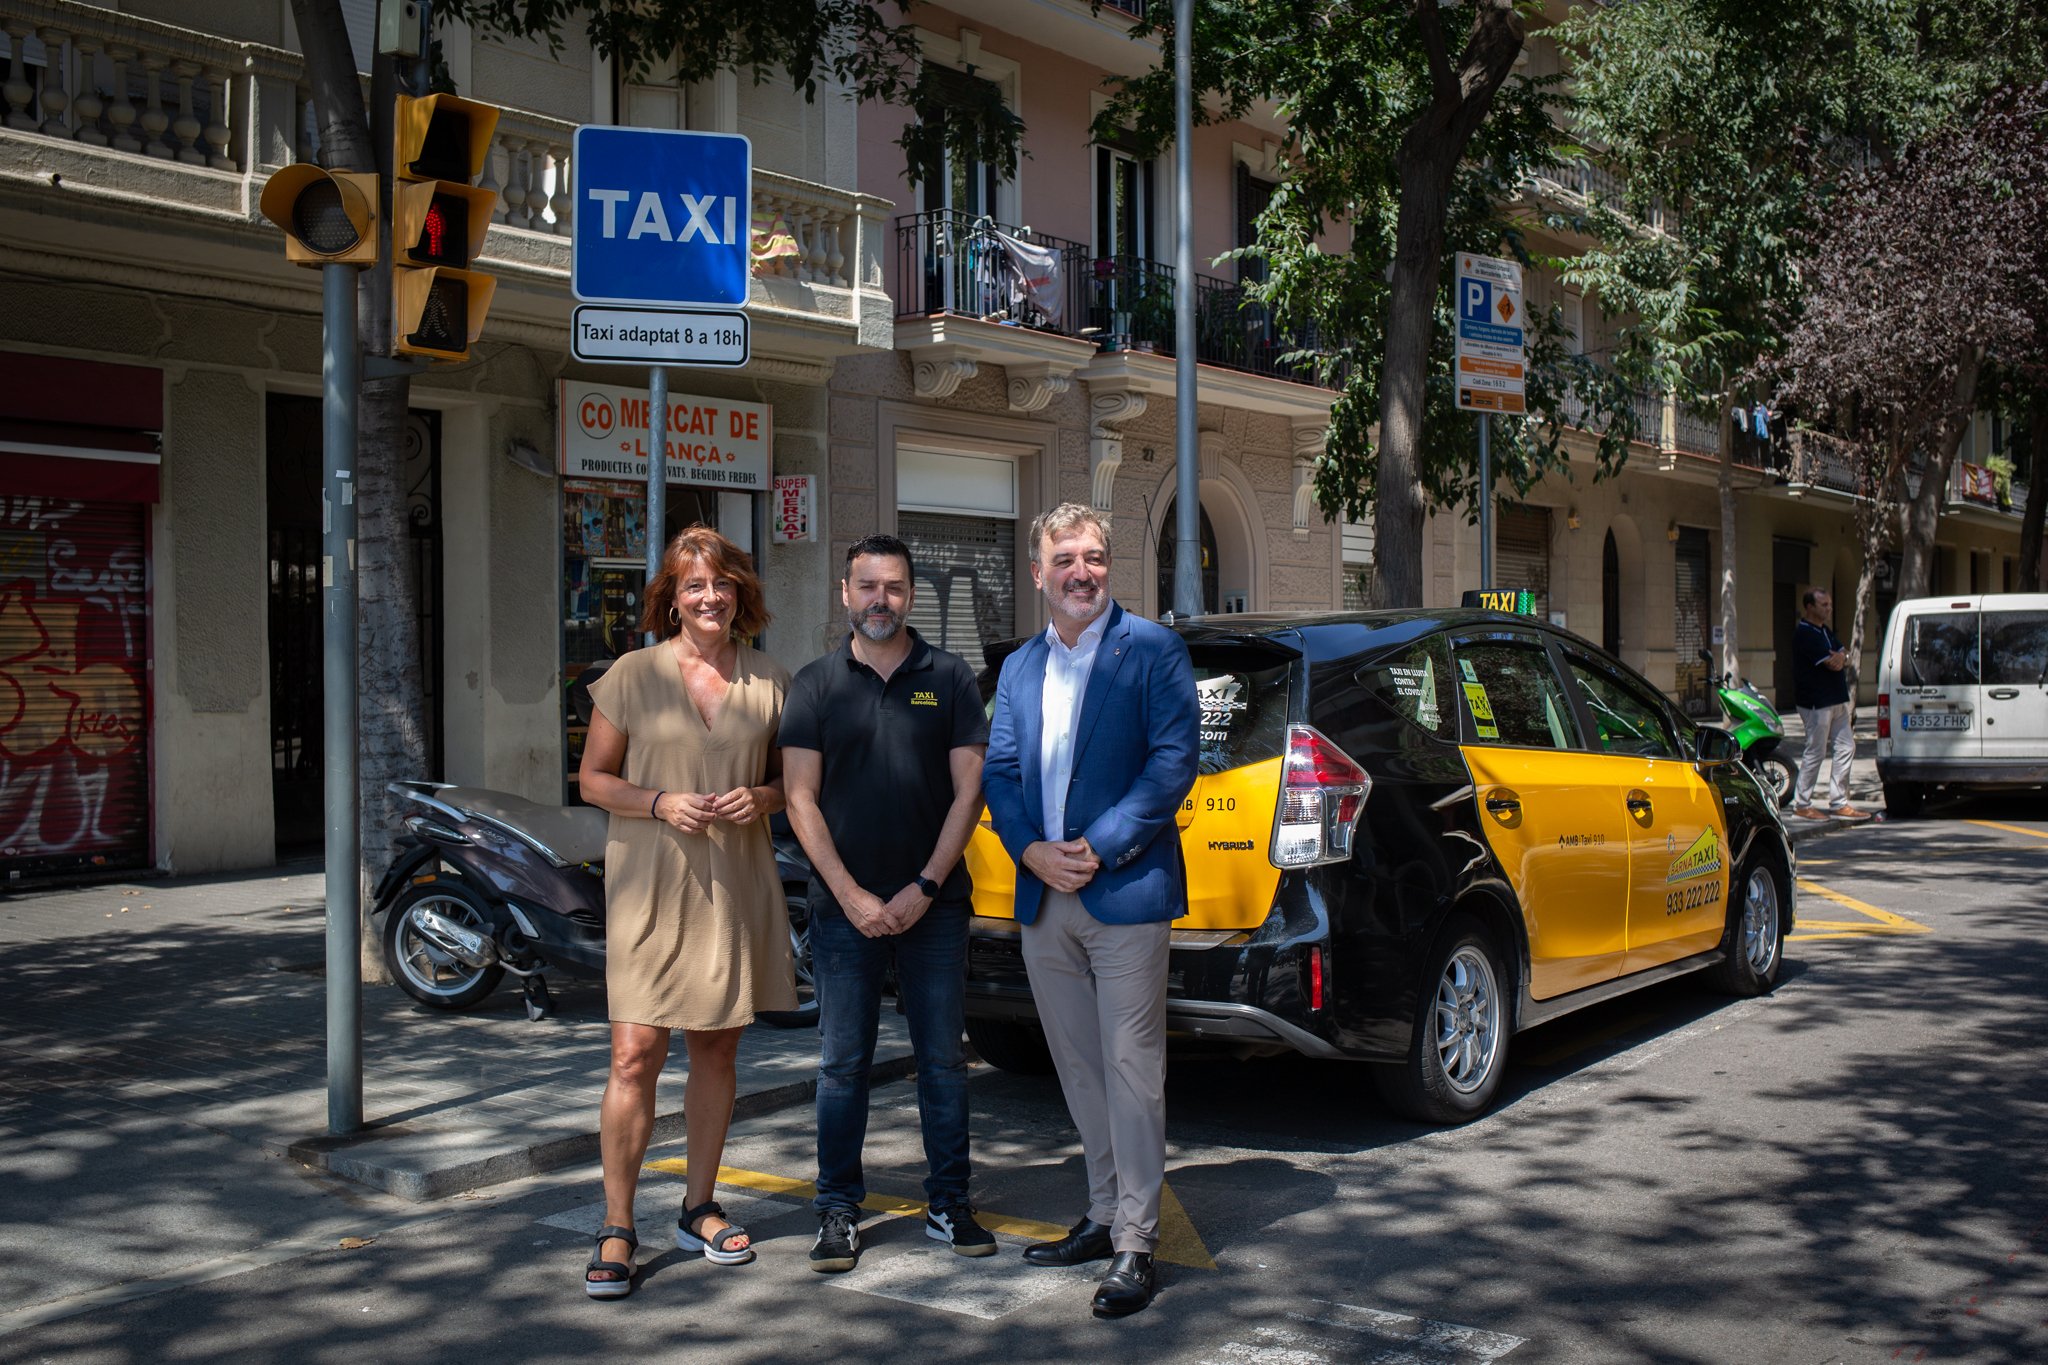 Barcelona incorpora microparadas de taxi para reducir la contaminación y mejorar la fluidez viaria